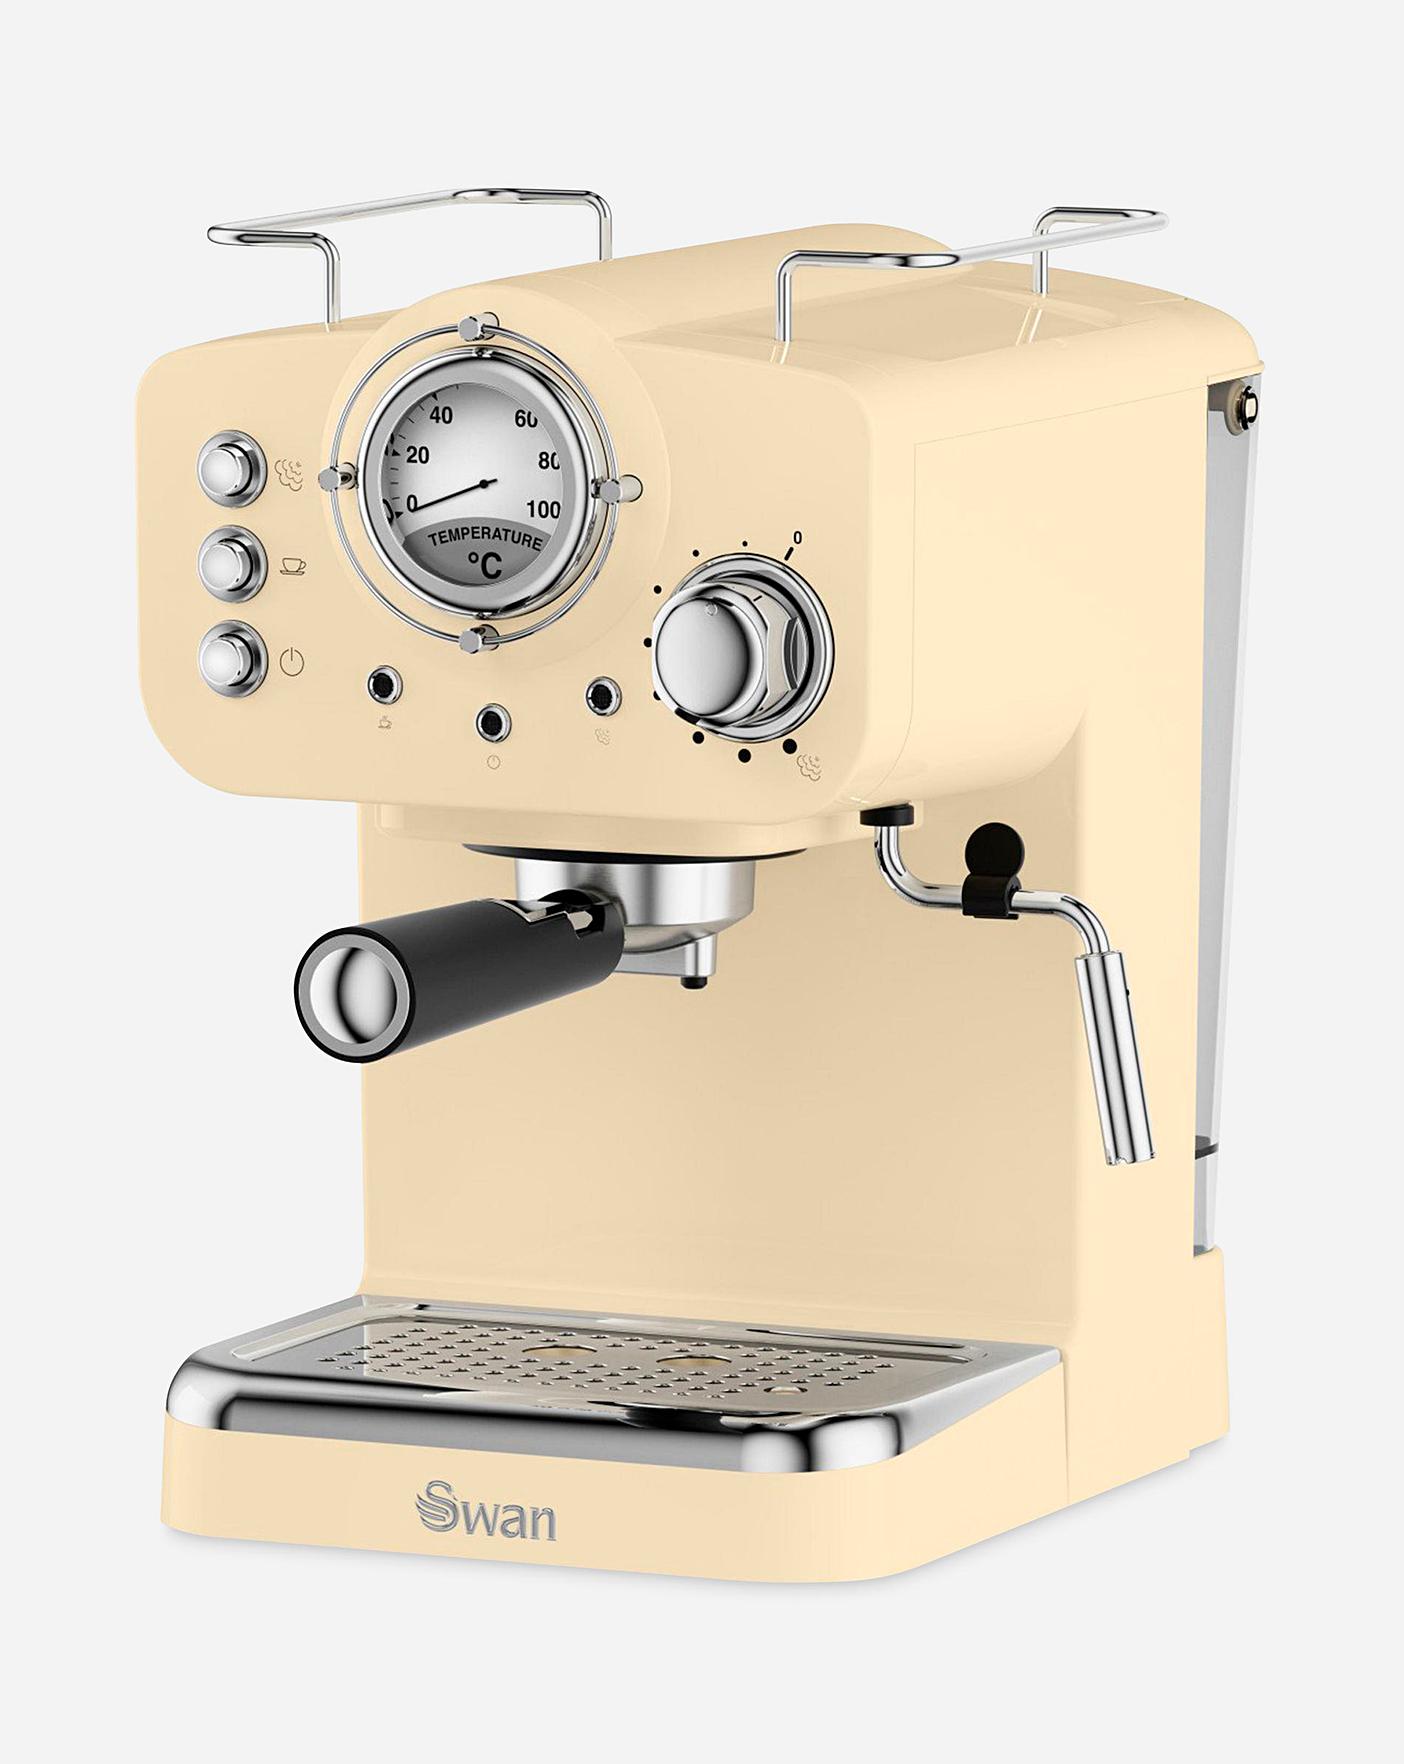 Swan Retro Cream Espresso Coffee Machine